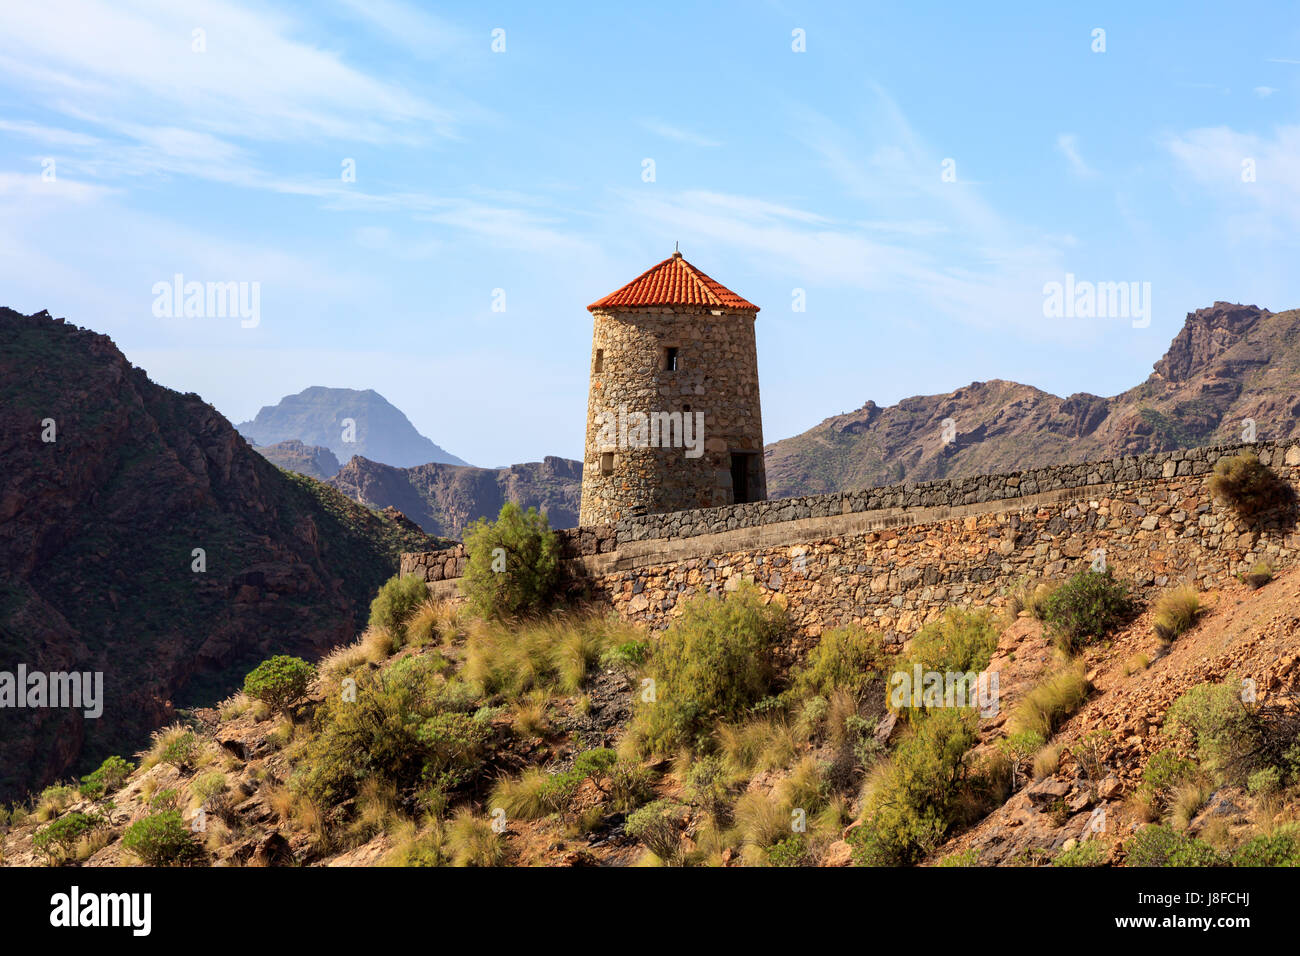 Old windmill in the mountains of Gran Canaria, near Presa del Parralillo,Spain Stock Photo